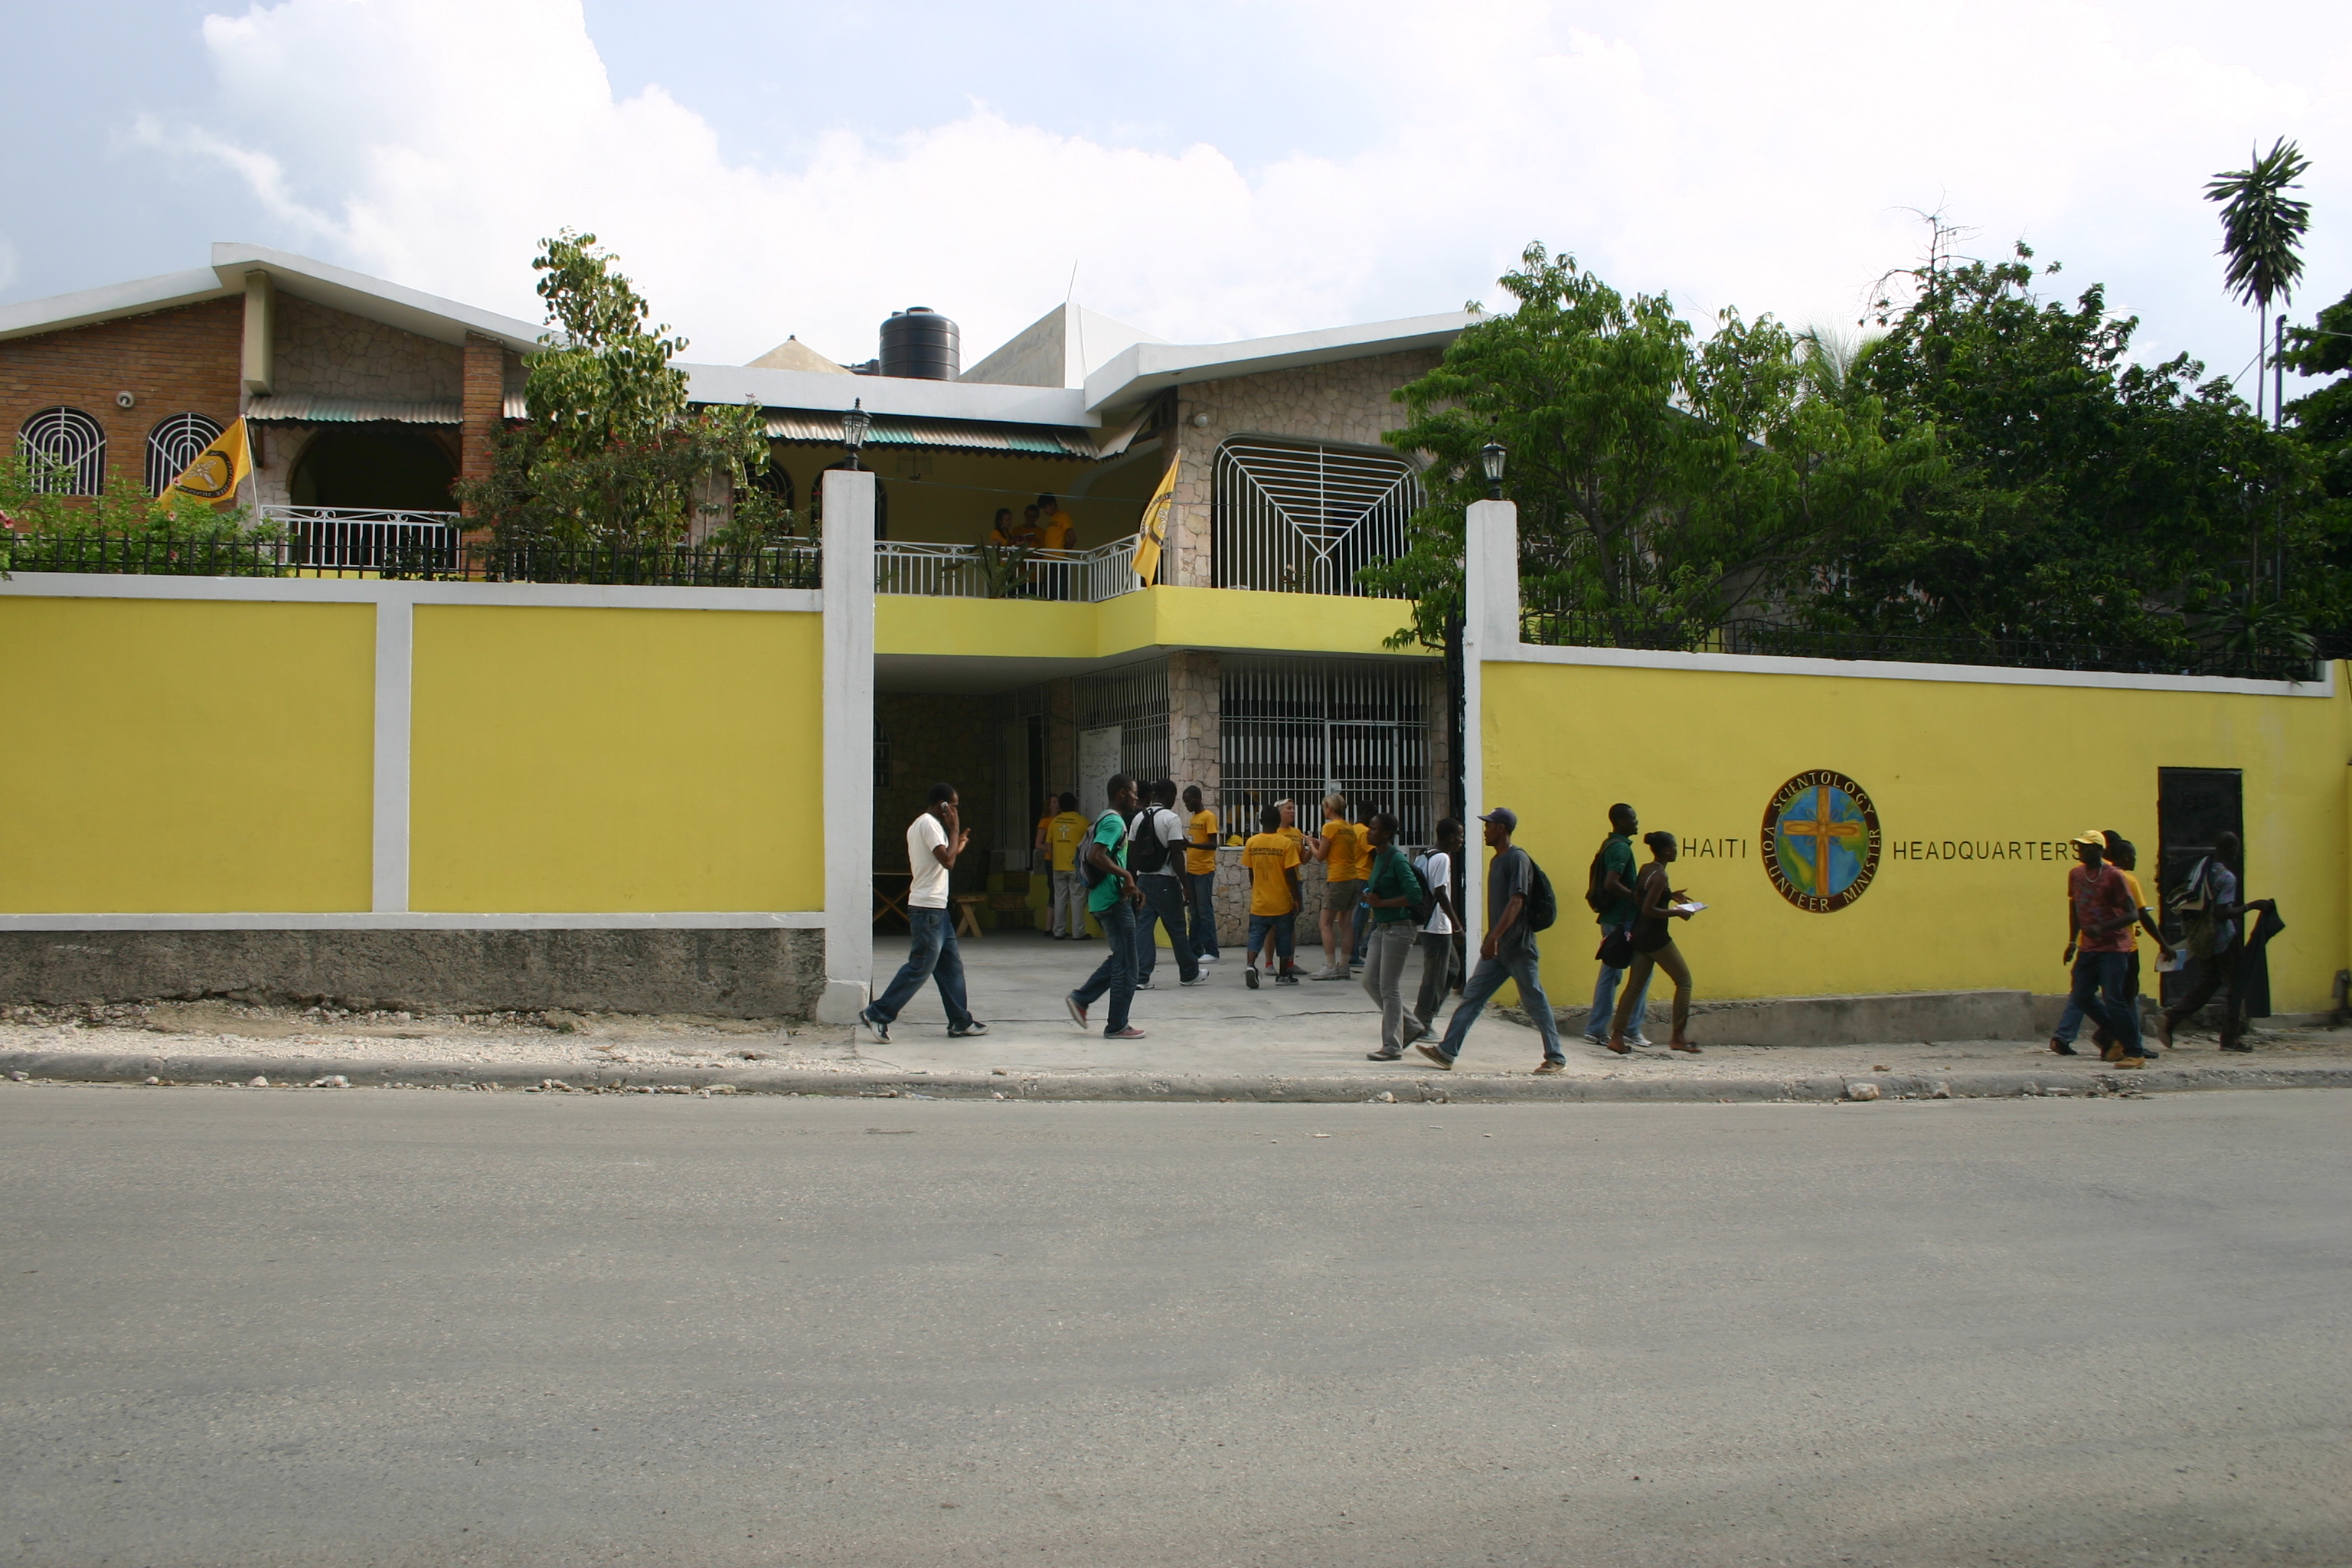 הבית בן שלוש הקומות של היועצים הרוחניים המתנדבים בהאיטי מאפשר אספקה בטוחה ויעילה של עזרה לאוכלוסייה של האיטי.